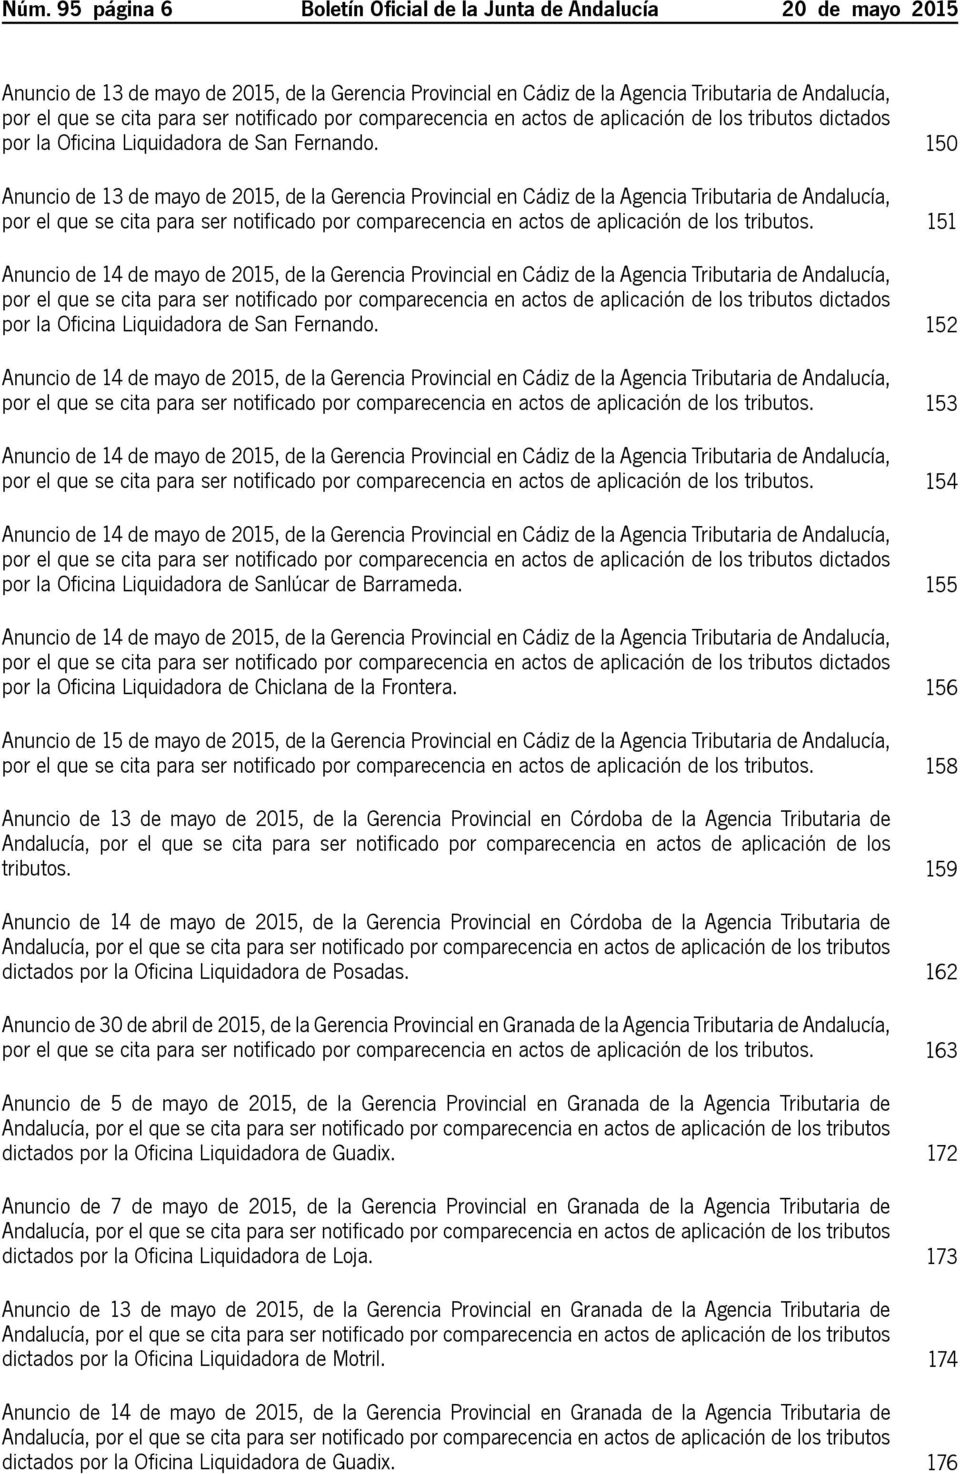 150 Anuncio de 13 de mayo de 2015, de la Gerencia Provincial en Cádiz de la Agencia Tributaria de Andalucía, por el que se cita para ser notificado por comparecencia en actos de aplicación de los